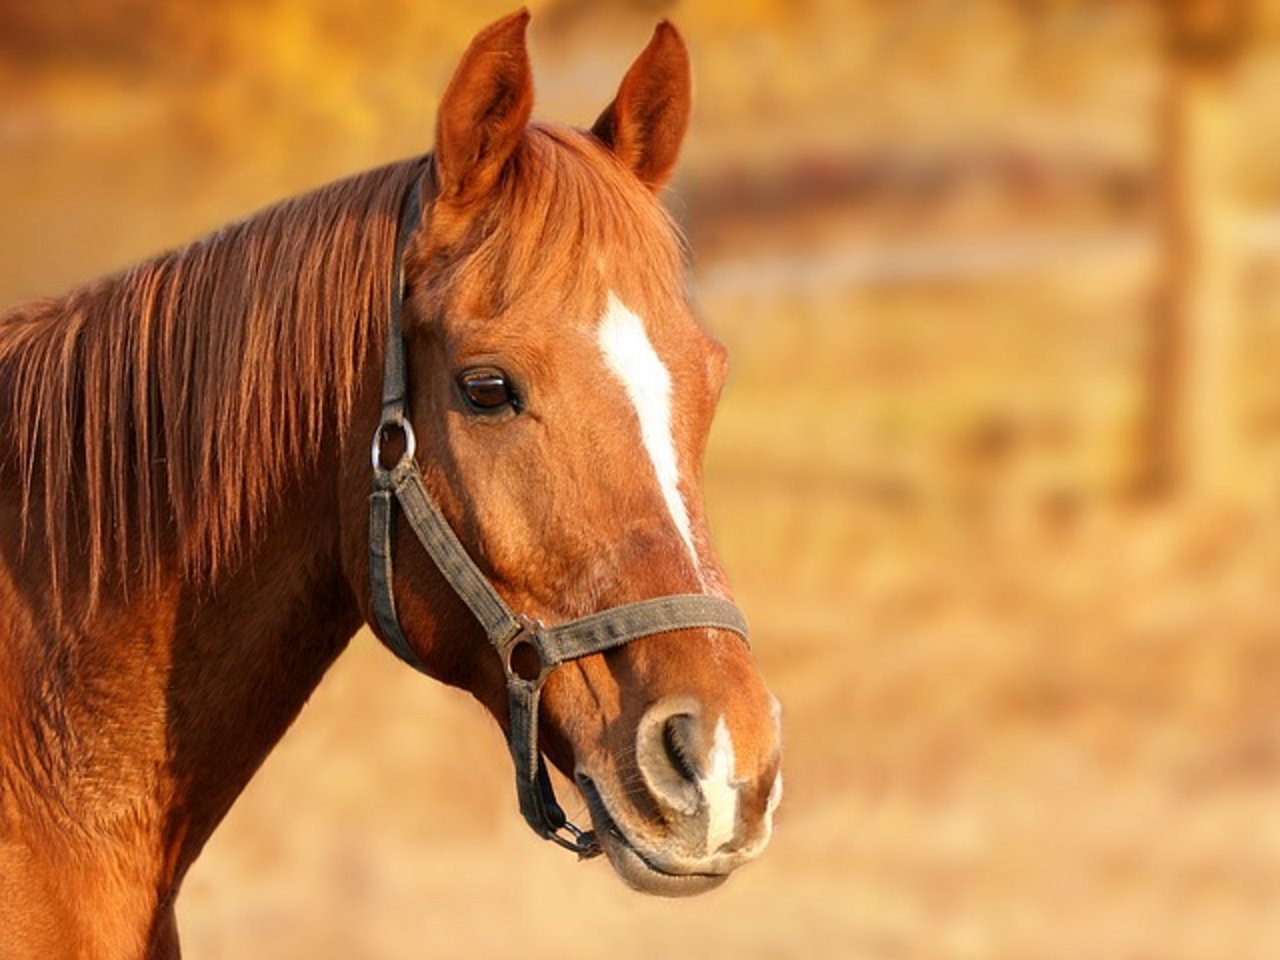 Pferde haben einen grossen ökoloigschen Fussabdruck. (Bild pixabay)